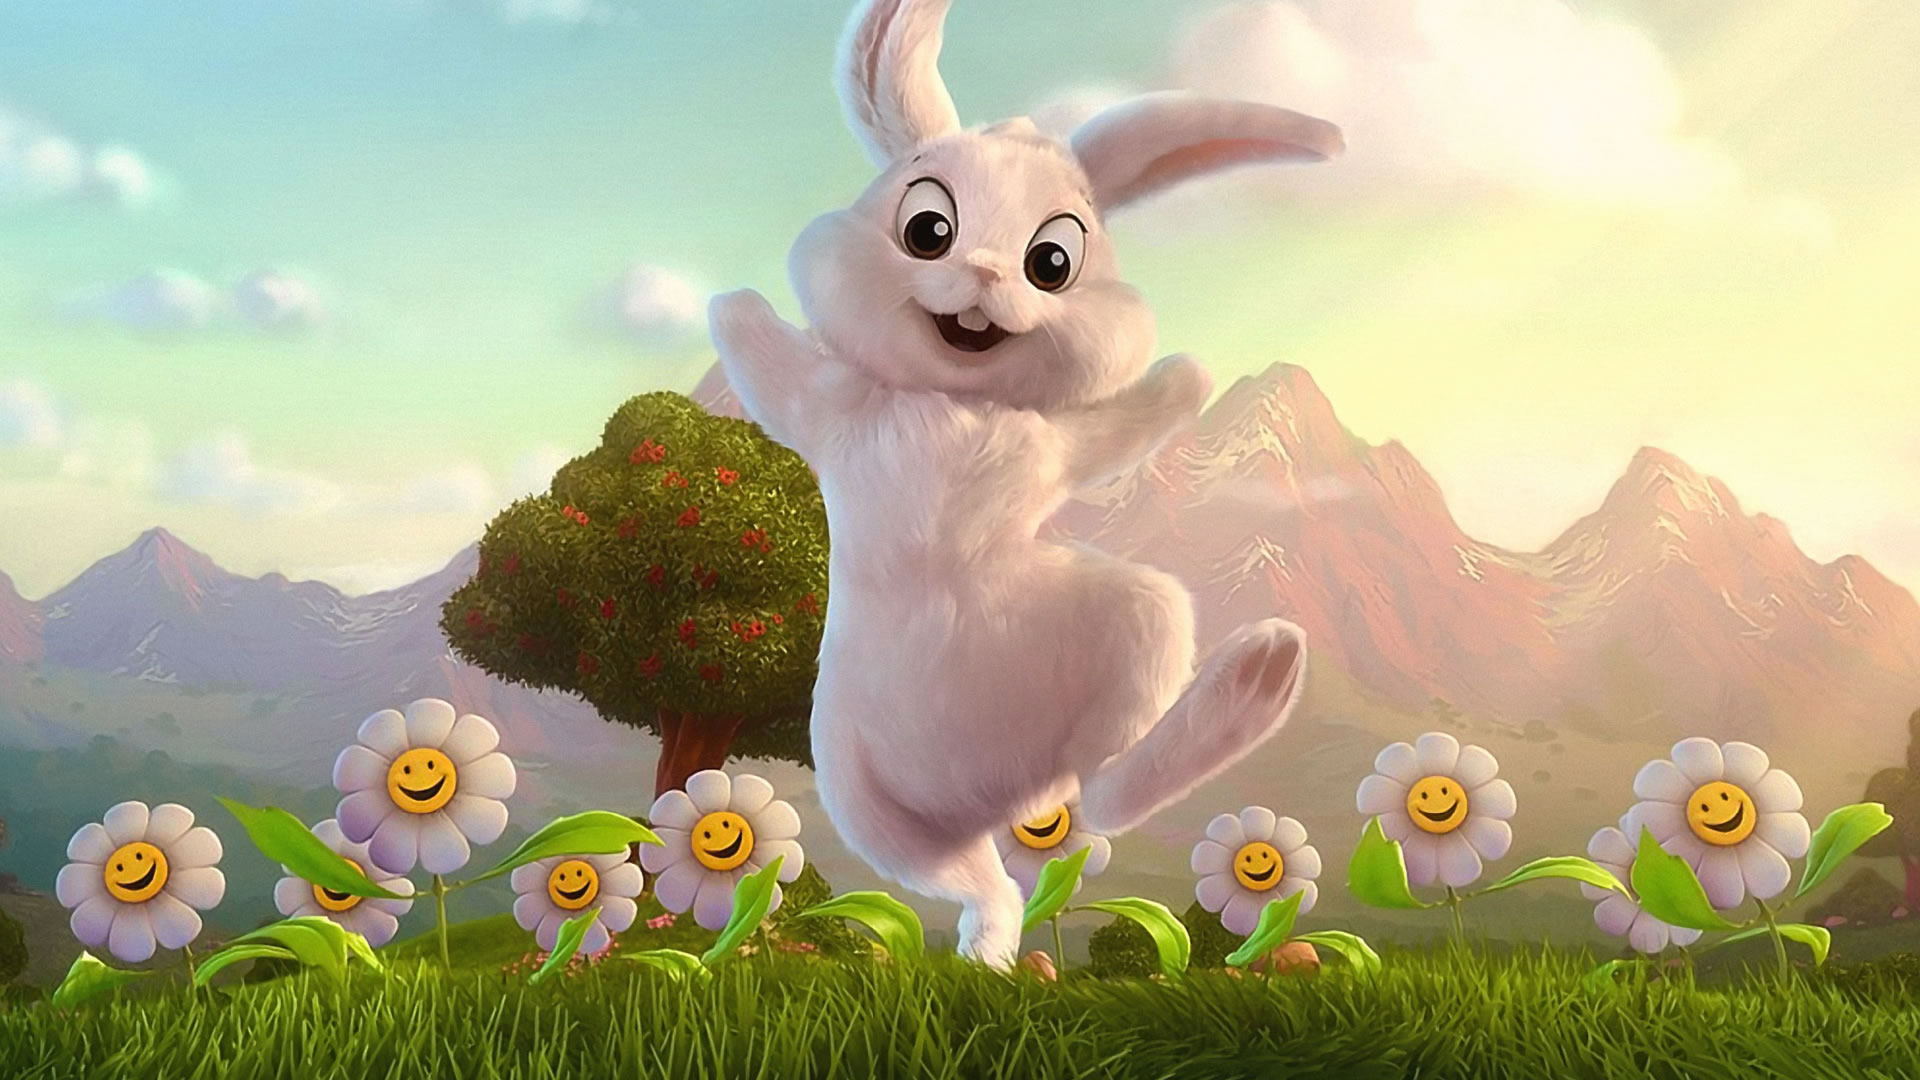 귀여운 만화 벽지,만화 영화,토끼와 토끼,토끼,토끼,국내 토끼